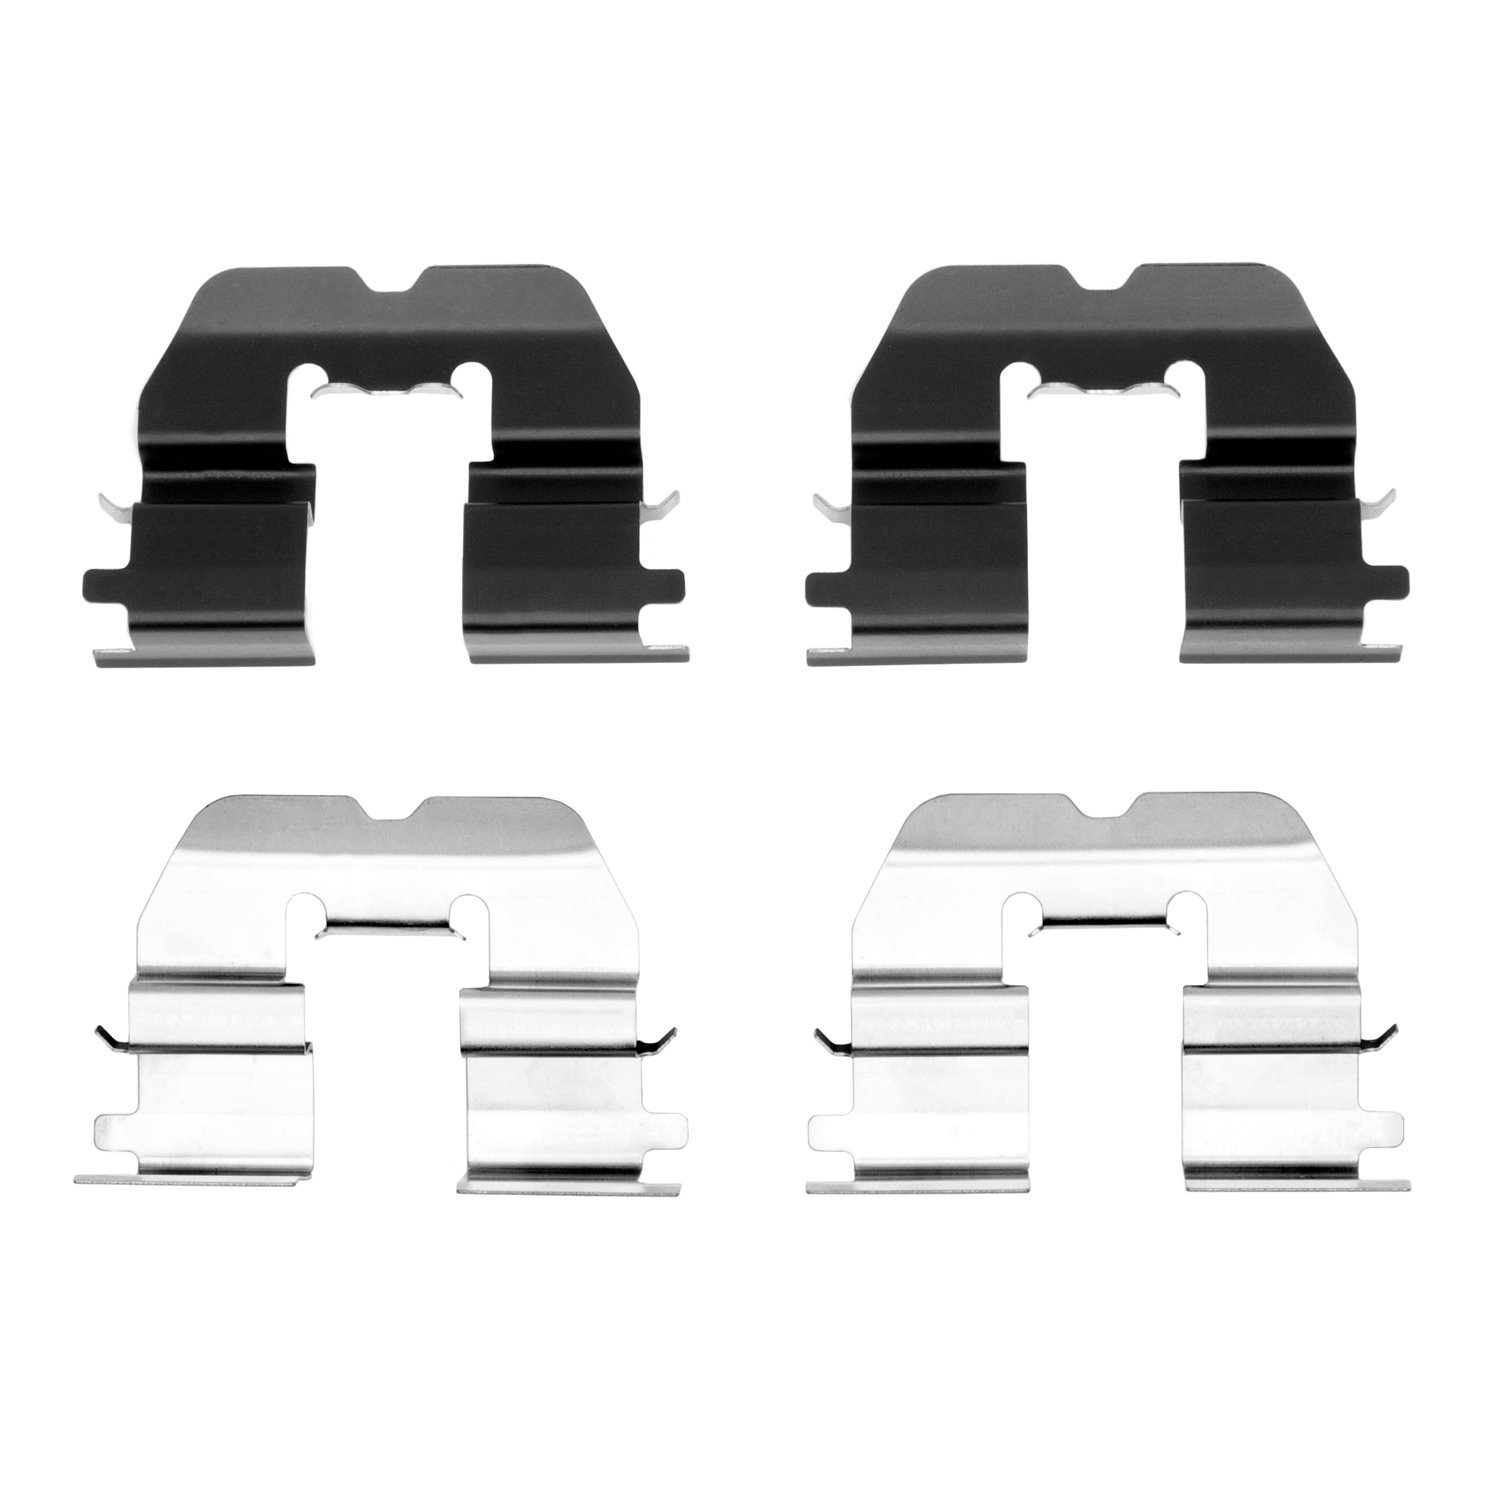 Disc Brake Hardware Kit, Fits Select Mini, Position: Rear